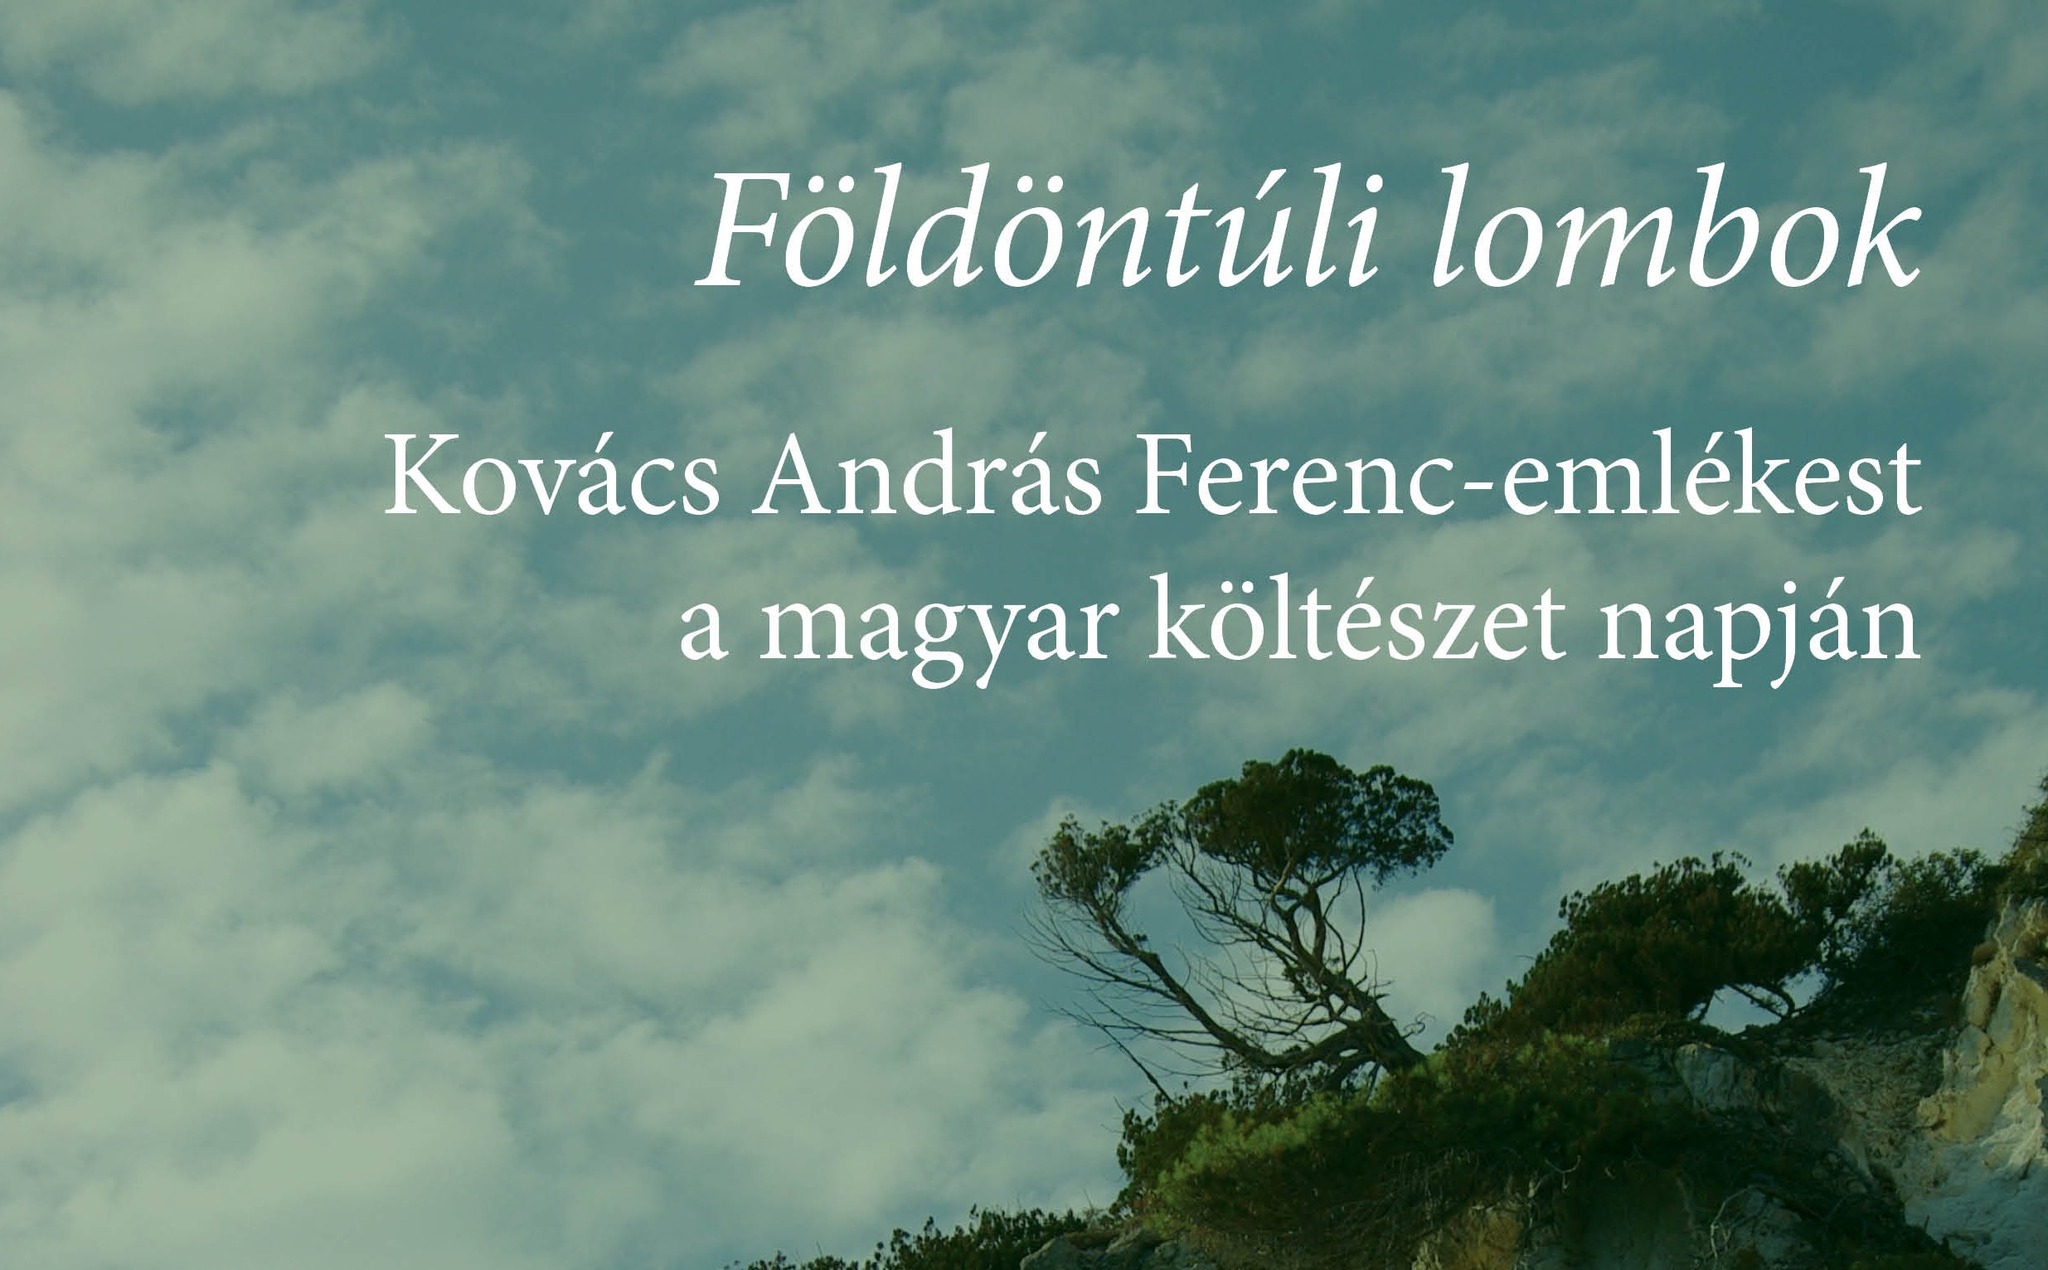 Kovács András Ferenc-emlékest a költészet napján